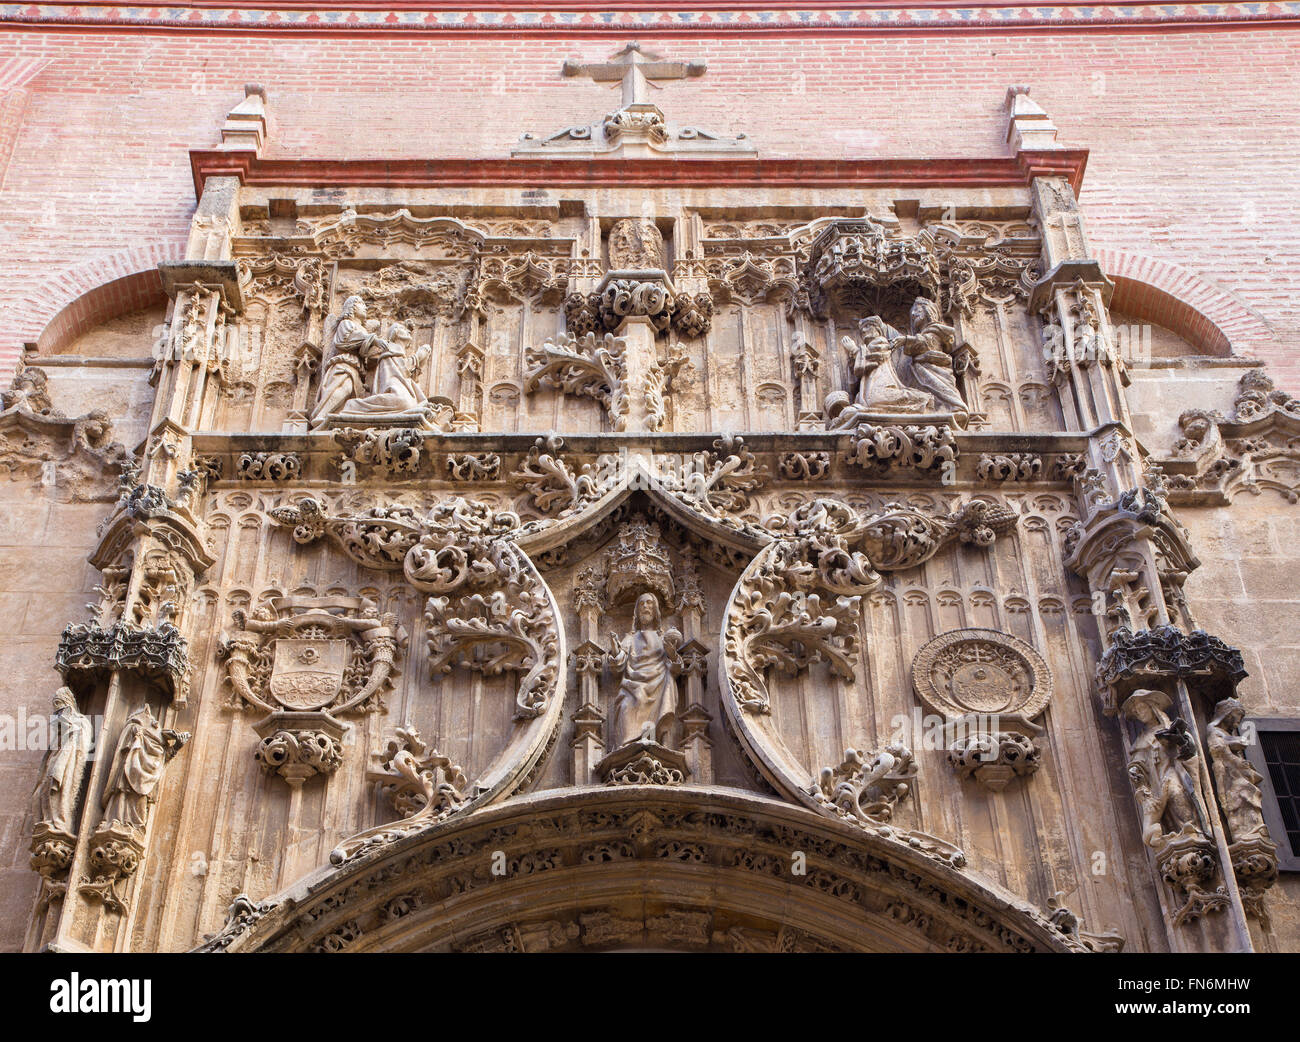 MALAGA, Spanien - 31. Mai 2015: Das gotische Portal der Seitenkapelle des Doms. Stockfoto